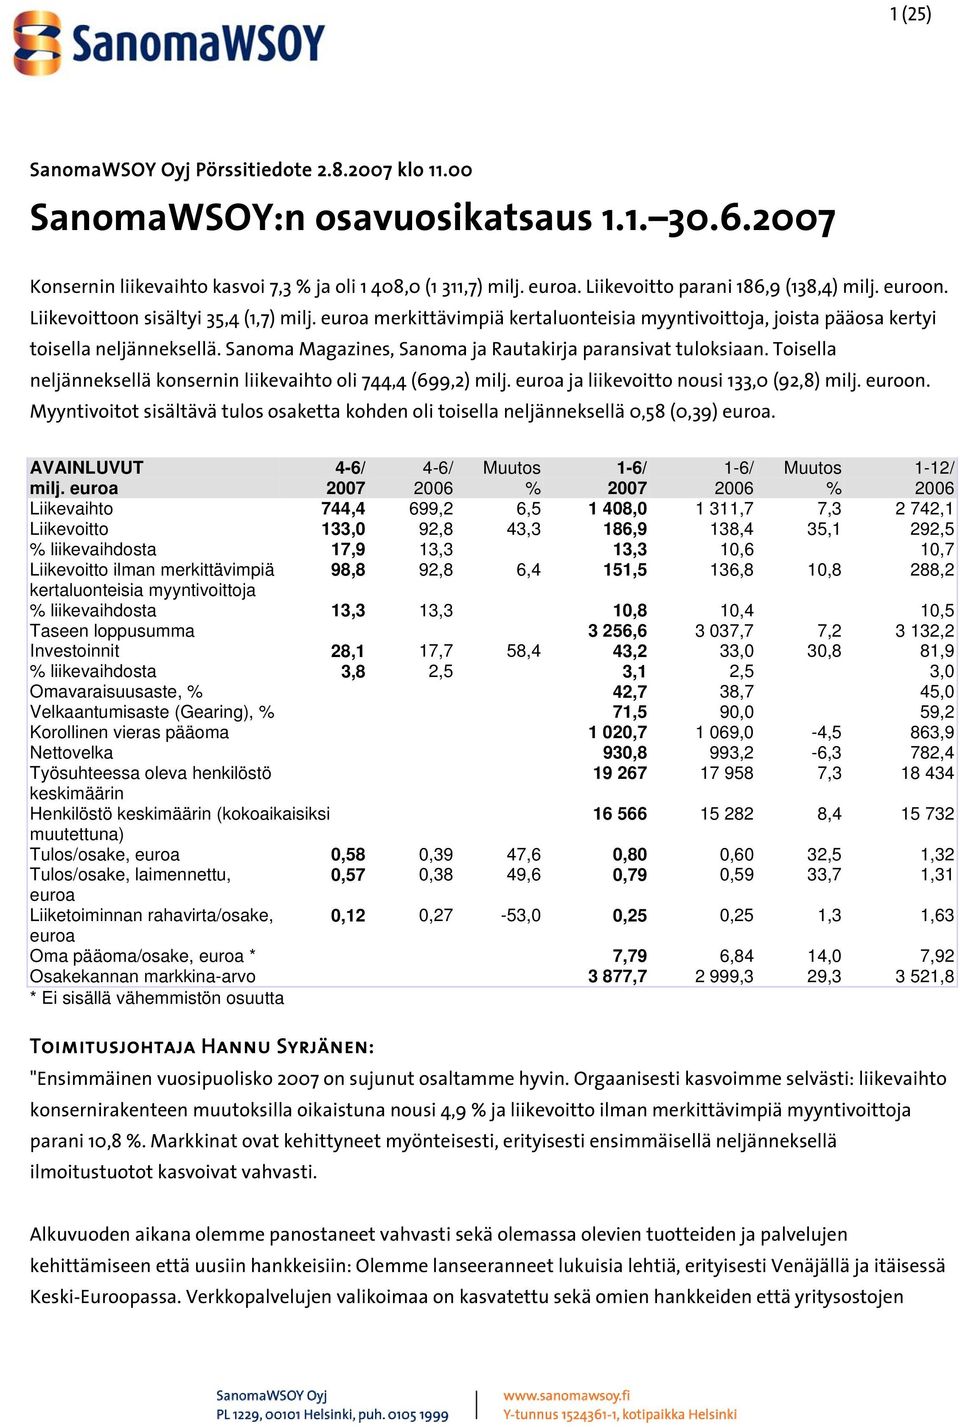 Sanoma Magazines, Sanoma ja Rautakirja paransivat tuloksiaan. Toisella neljänneksellä konsernin liikevaihto oli 744,4 (699,2) milj. euroa ja liikevoitto nousi 133,0 (92,8) milj. euroon.